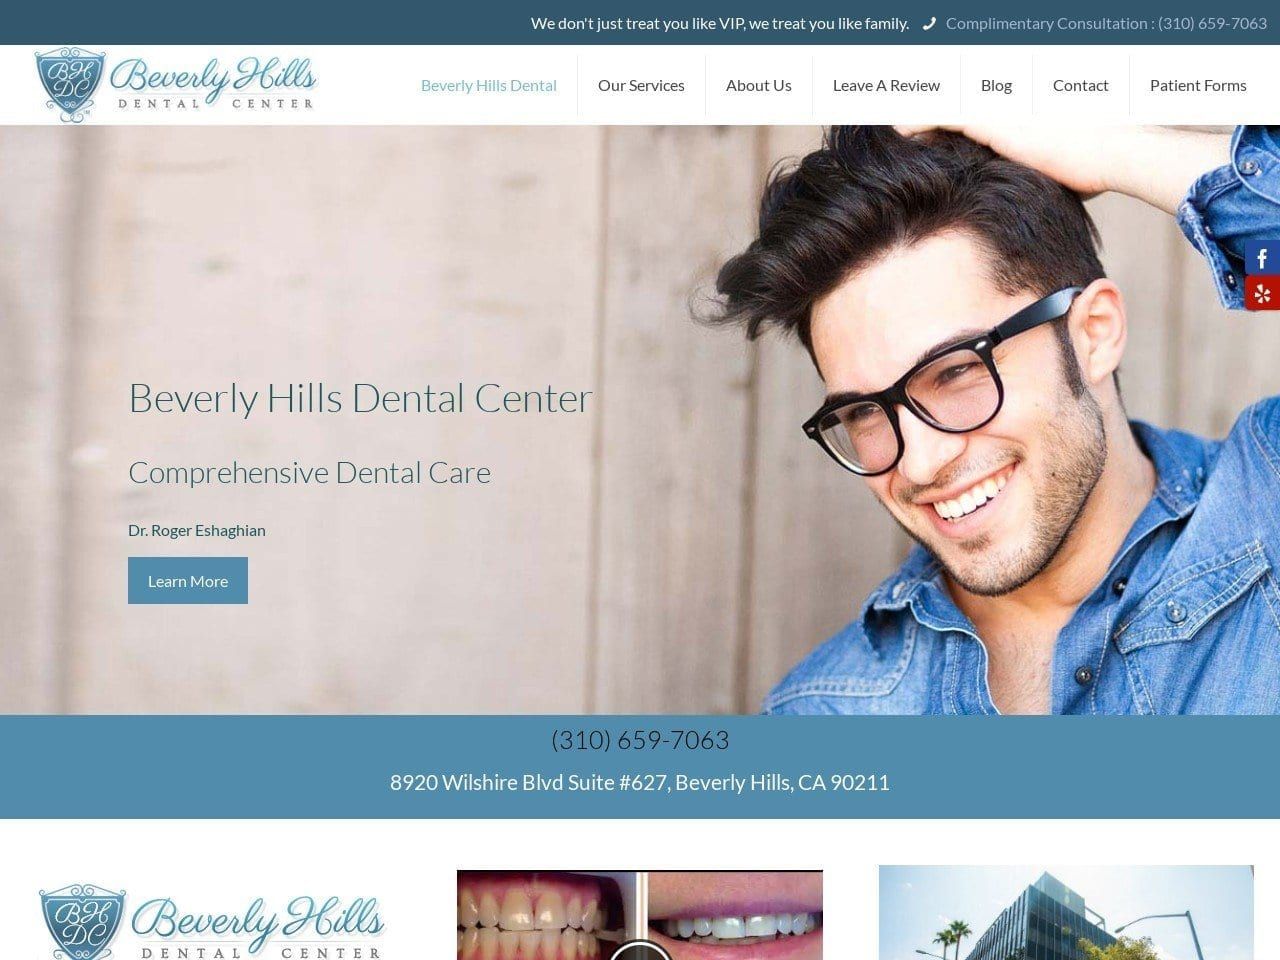 Beverly Hills Dental Center Website Screenshot from bhdc.com